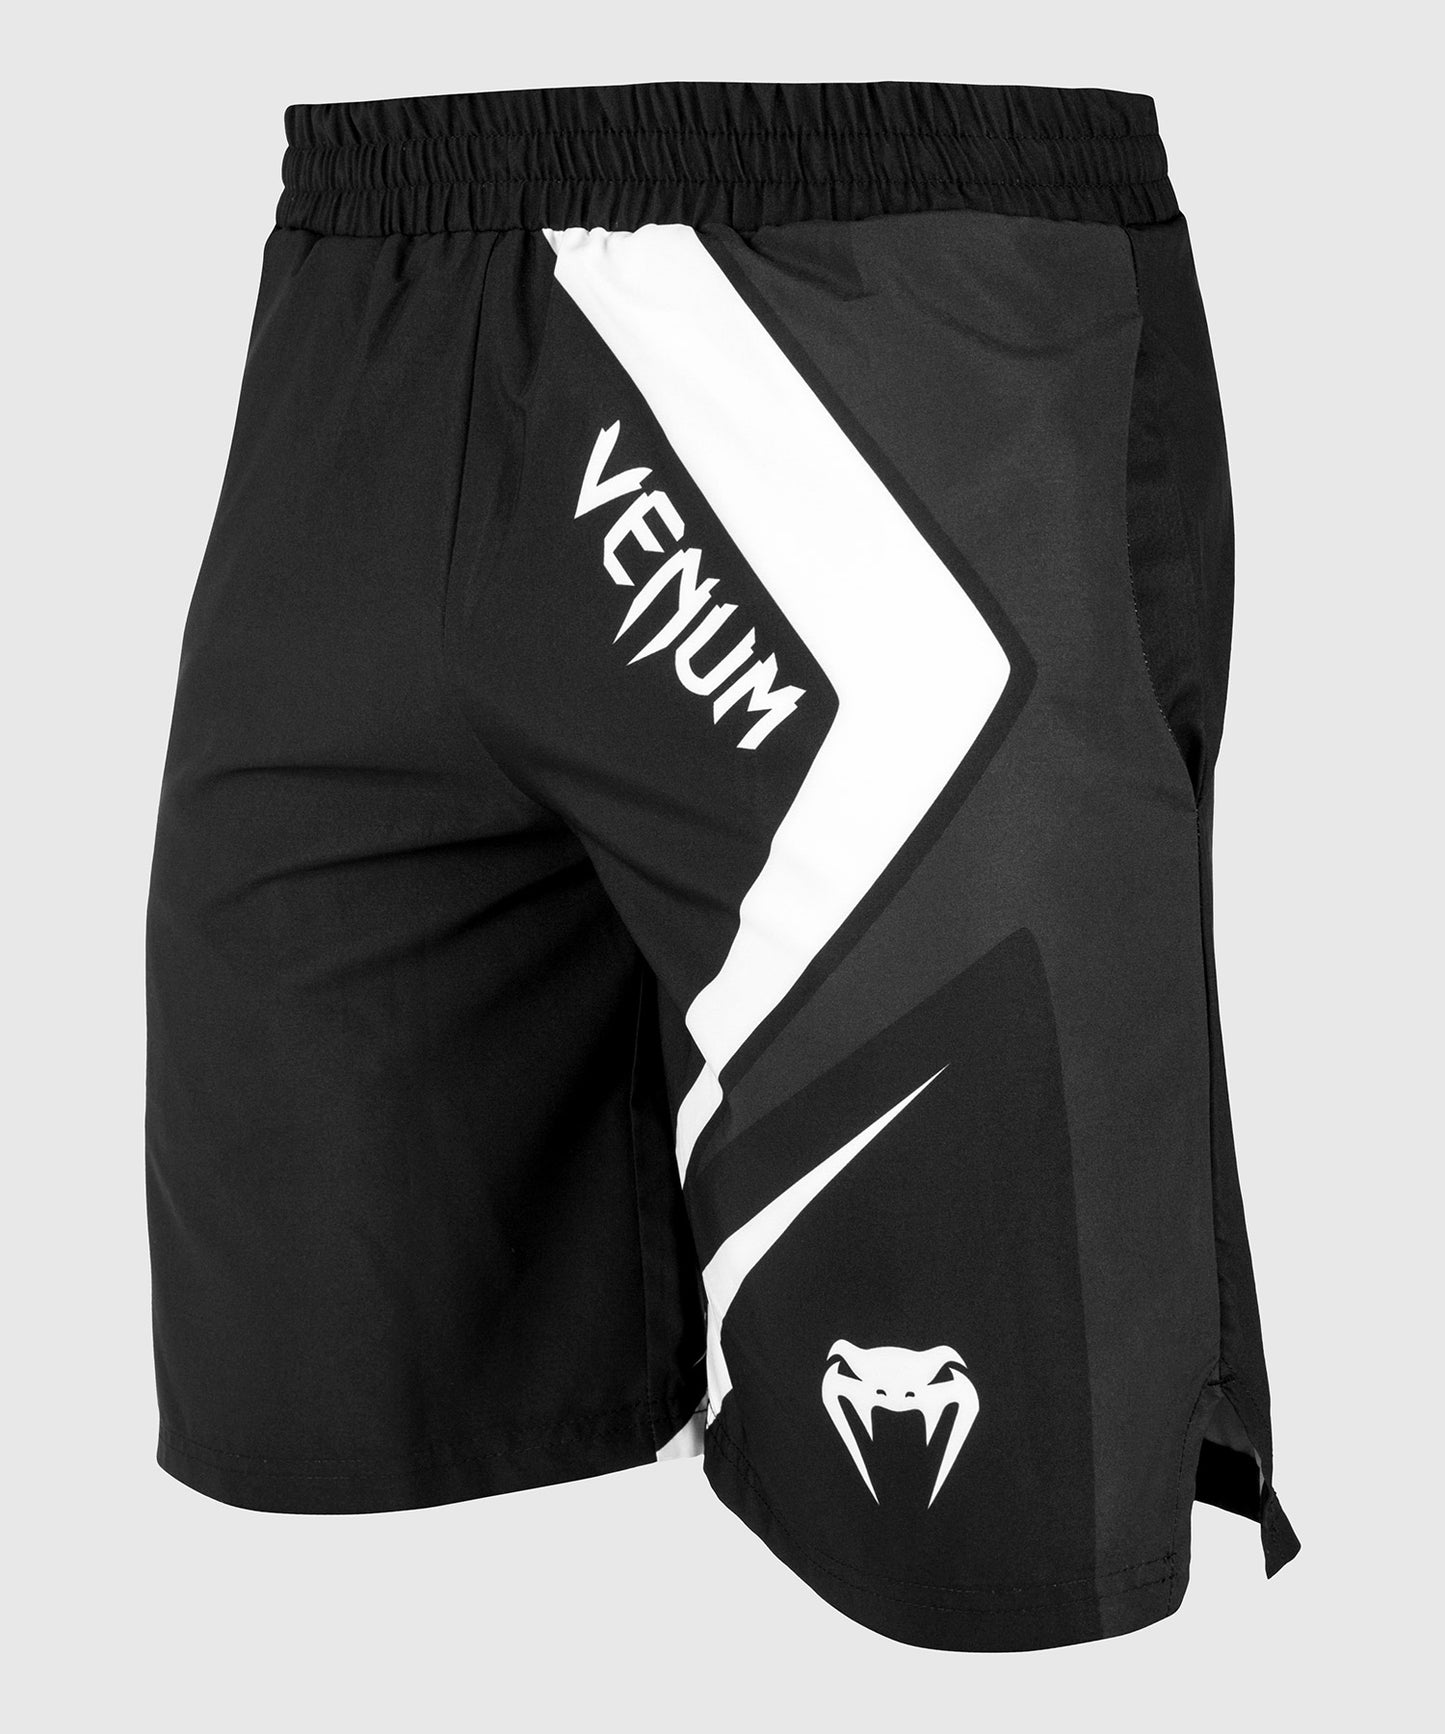 Venum Contender 4.0 Fitness-Shorts - Schwarz/Grau-Weiß